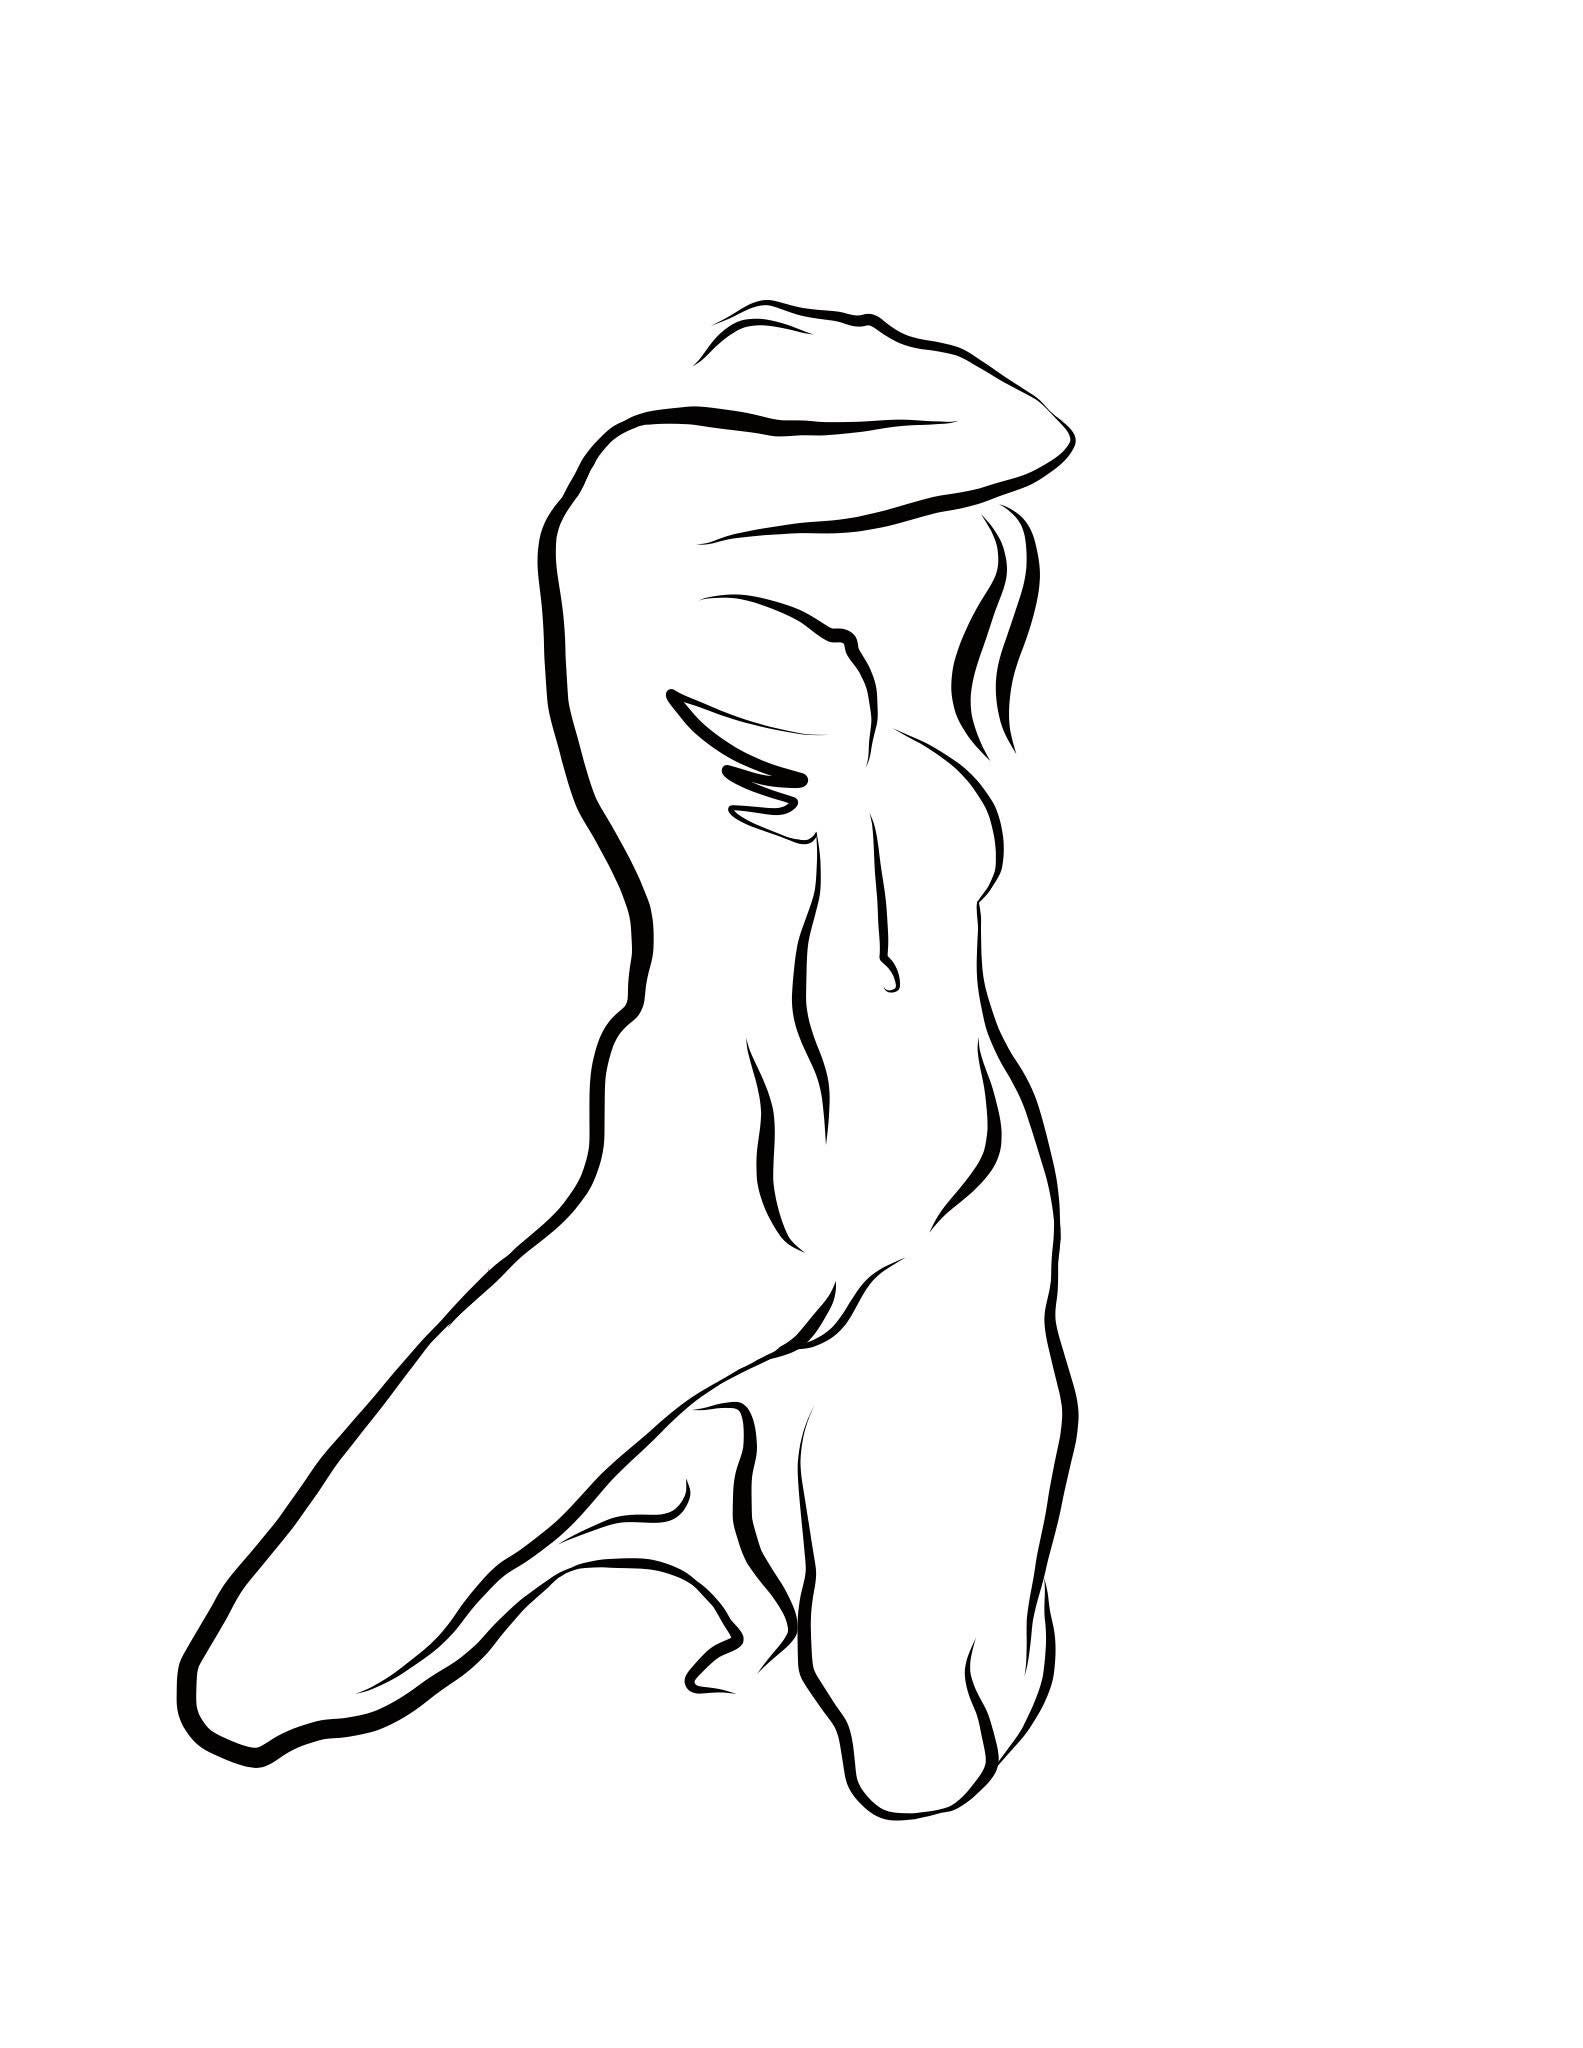 Michael Binkley Nude Print – Haiku #39, 1/50 - Digitale Vector-Zeichnung kniende weibliche nackte weibliche Aktfigur, Figur